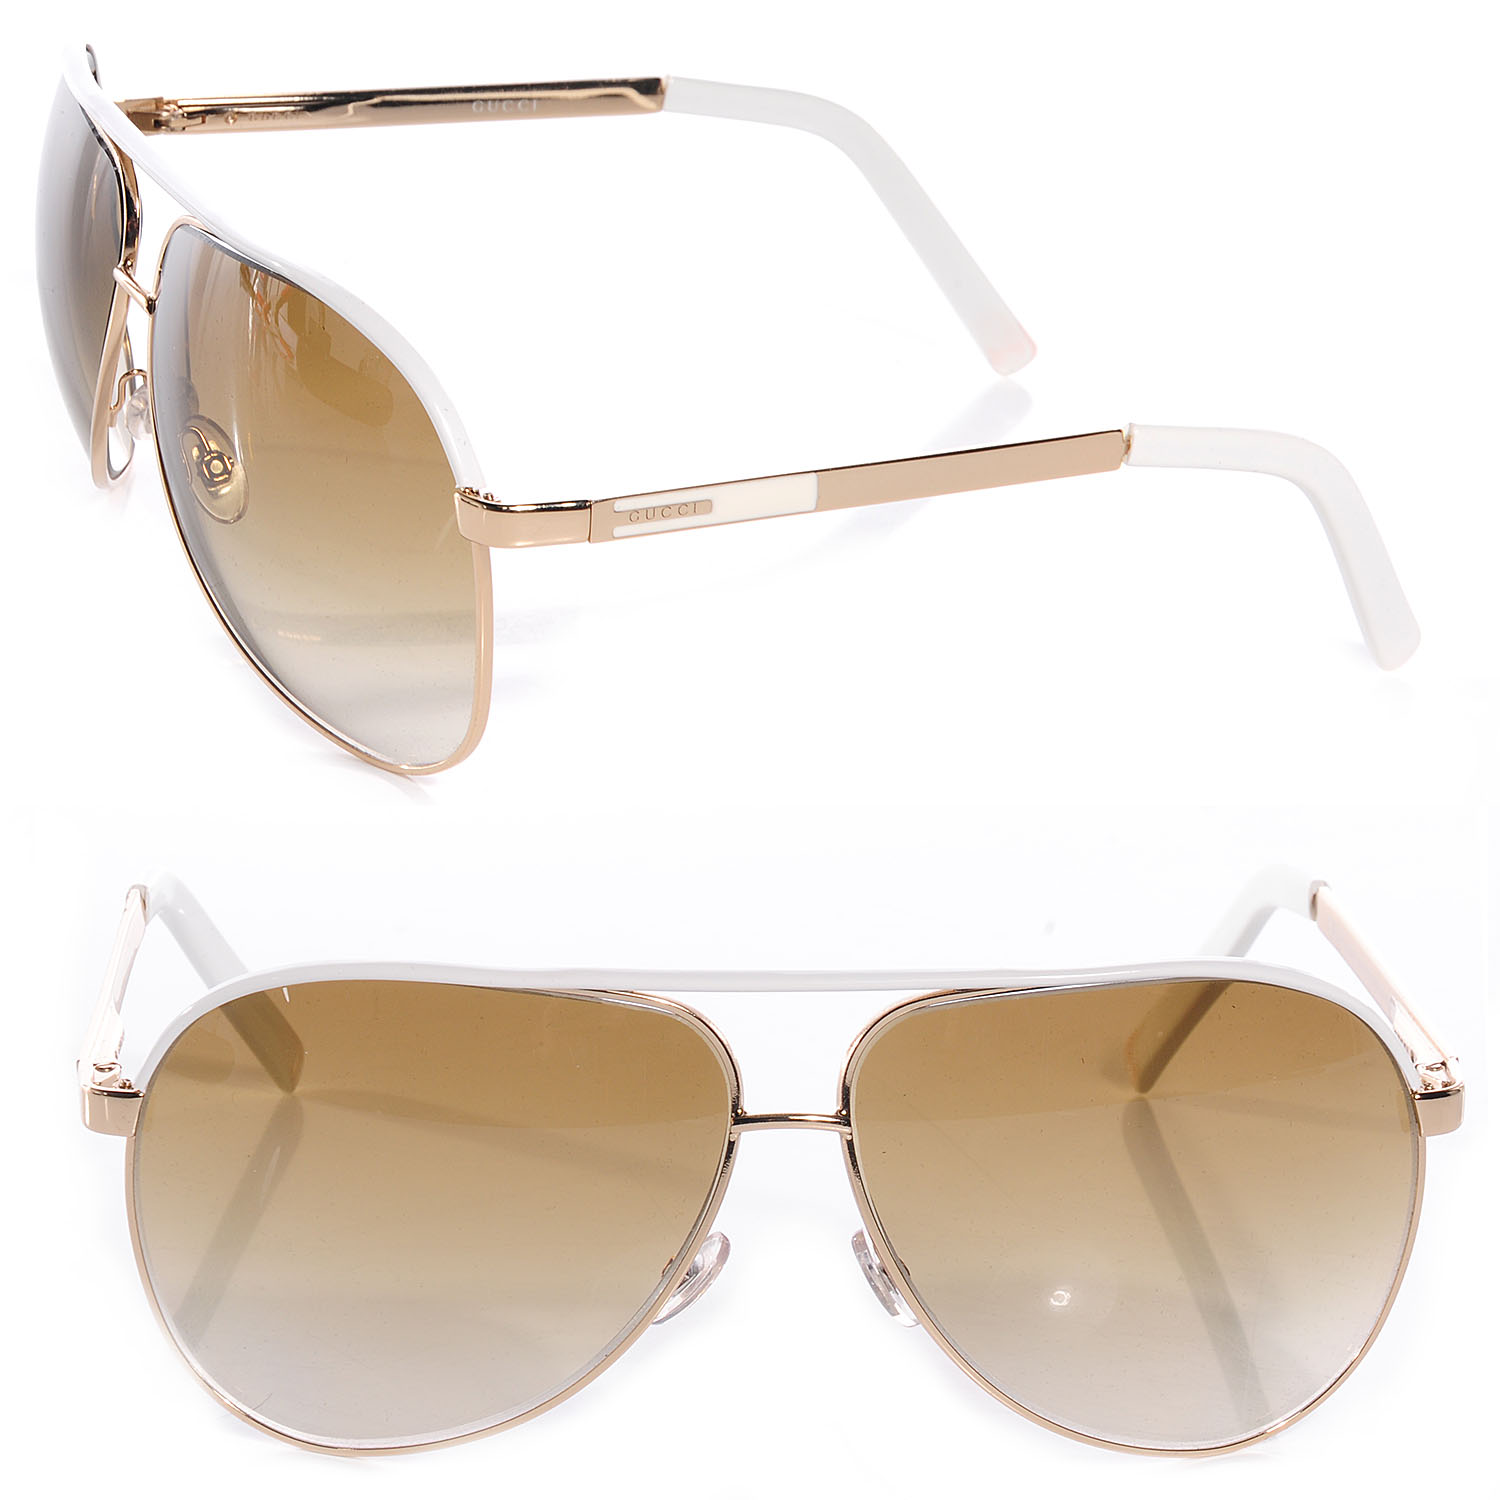 white and gold gucci sunglasses